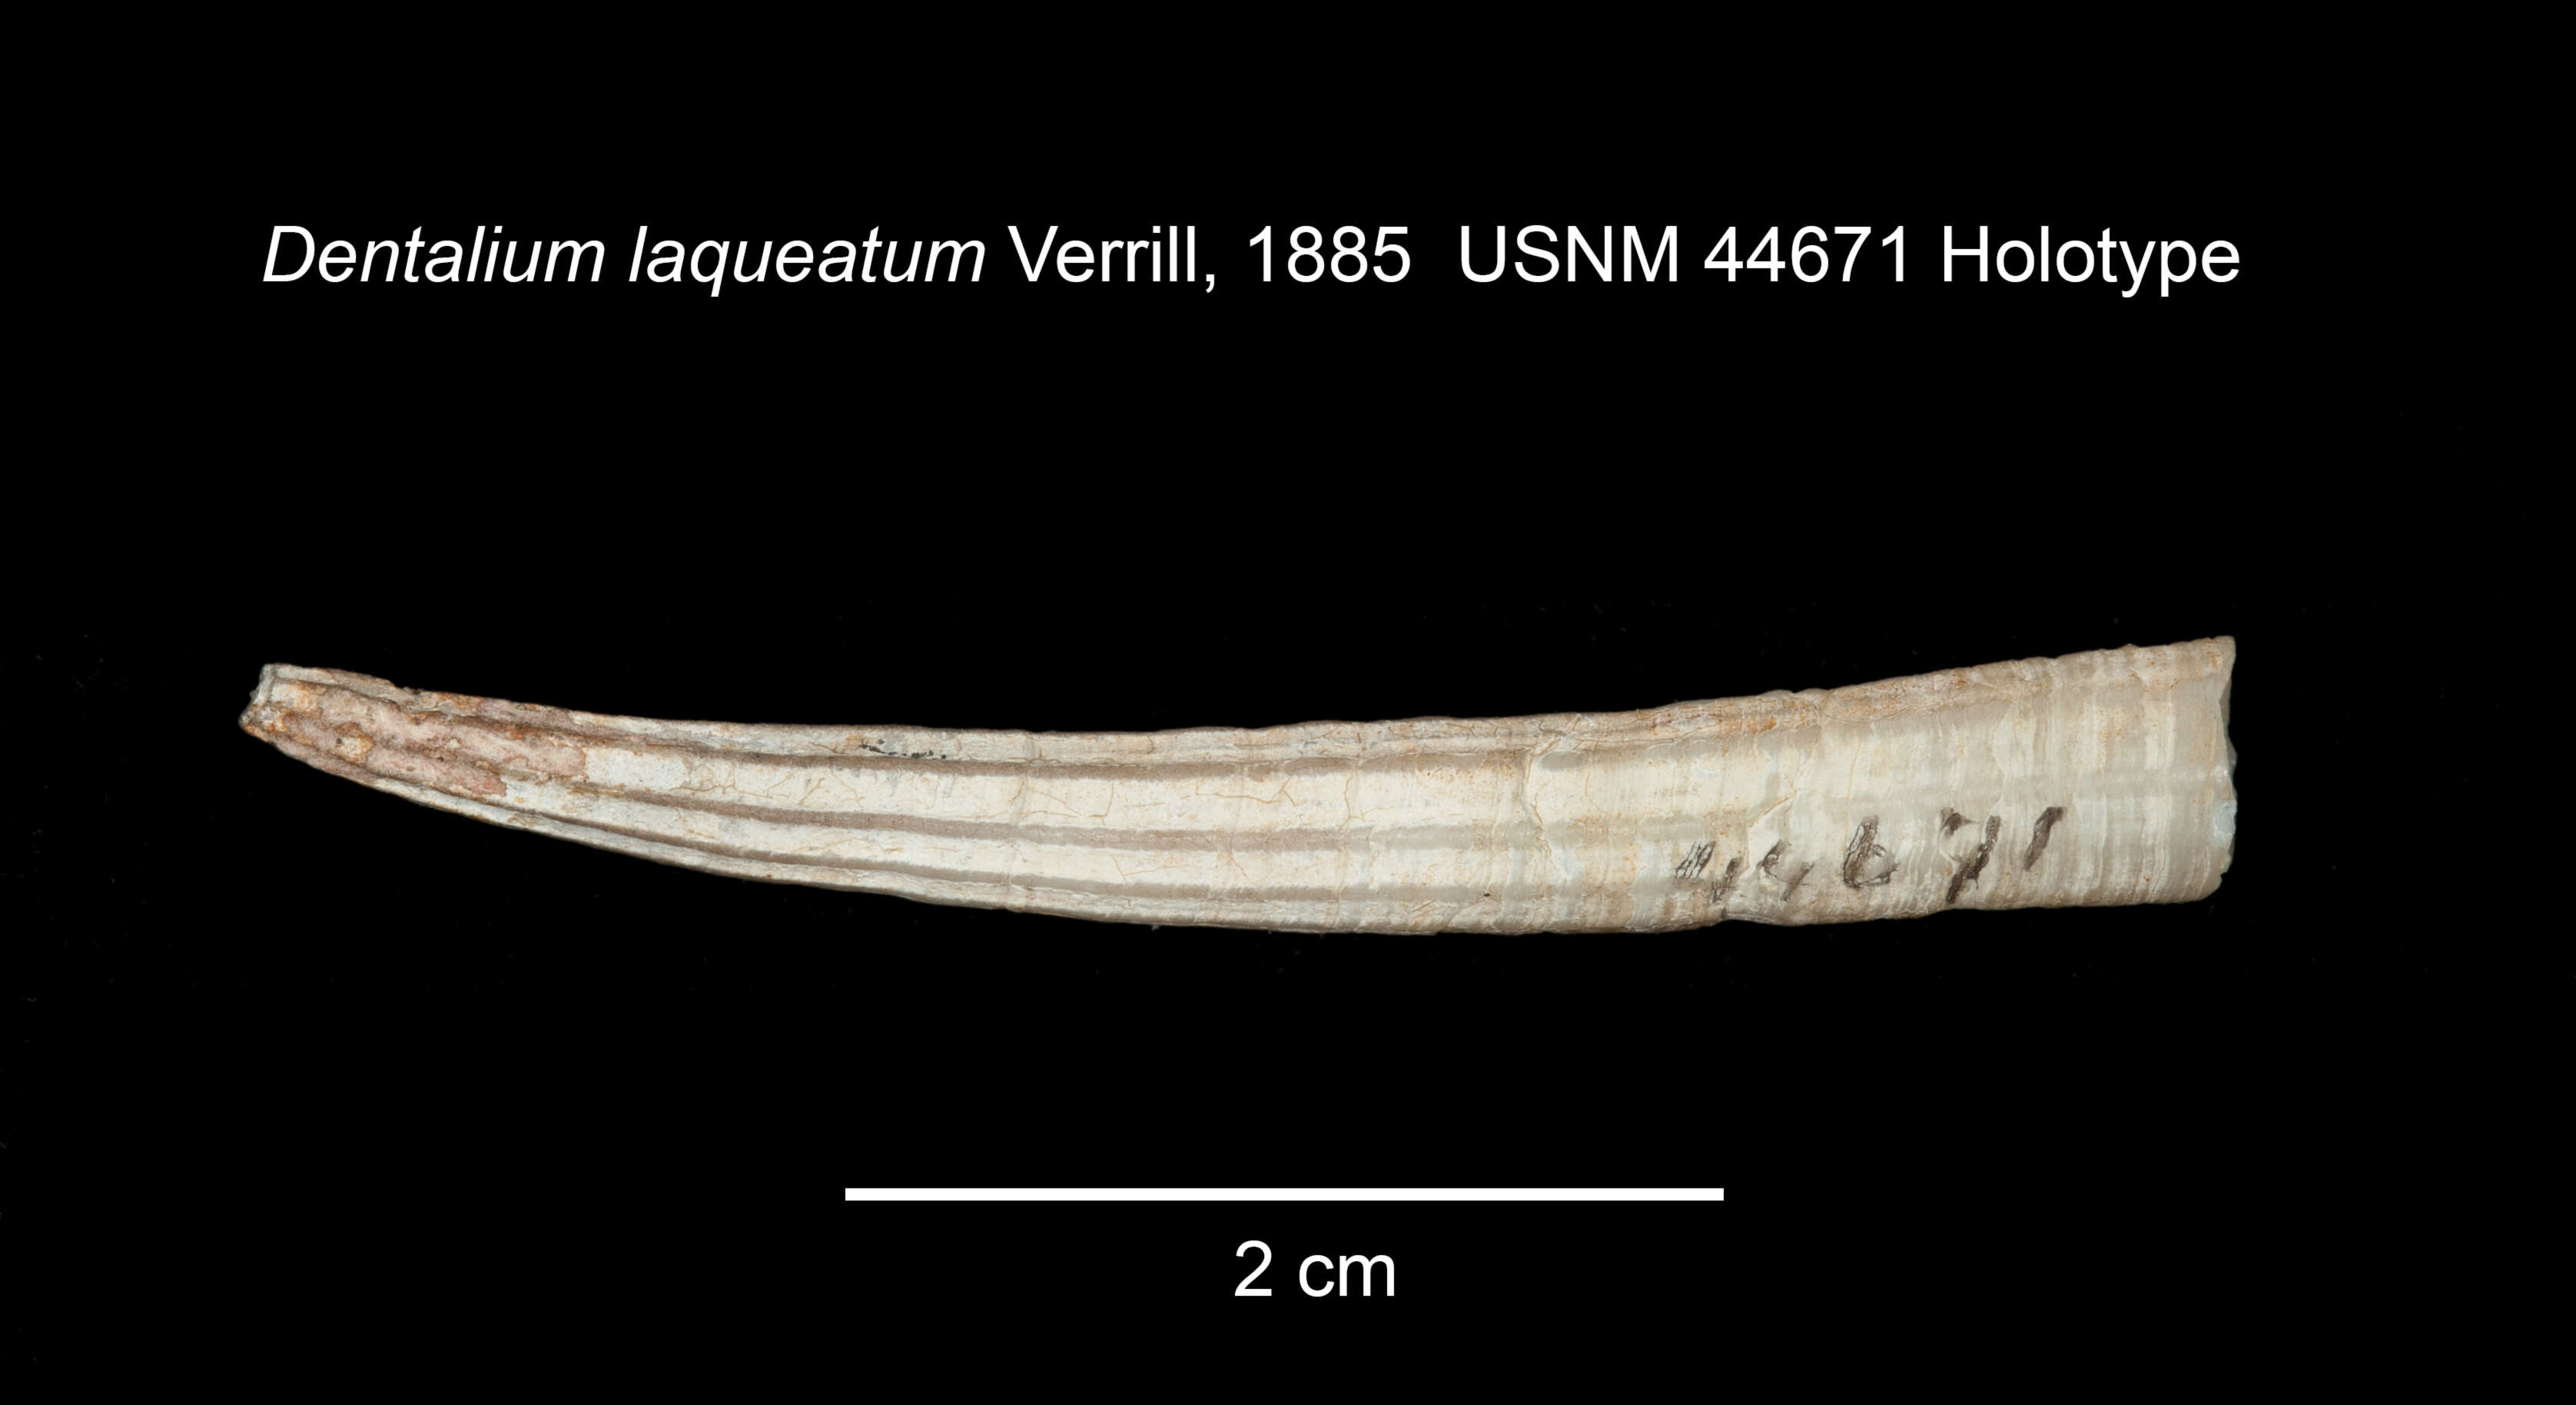 Image of reticulate tuskshell